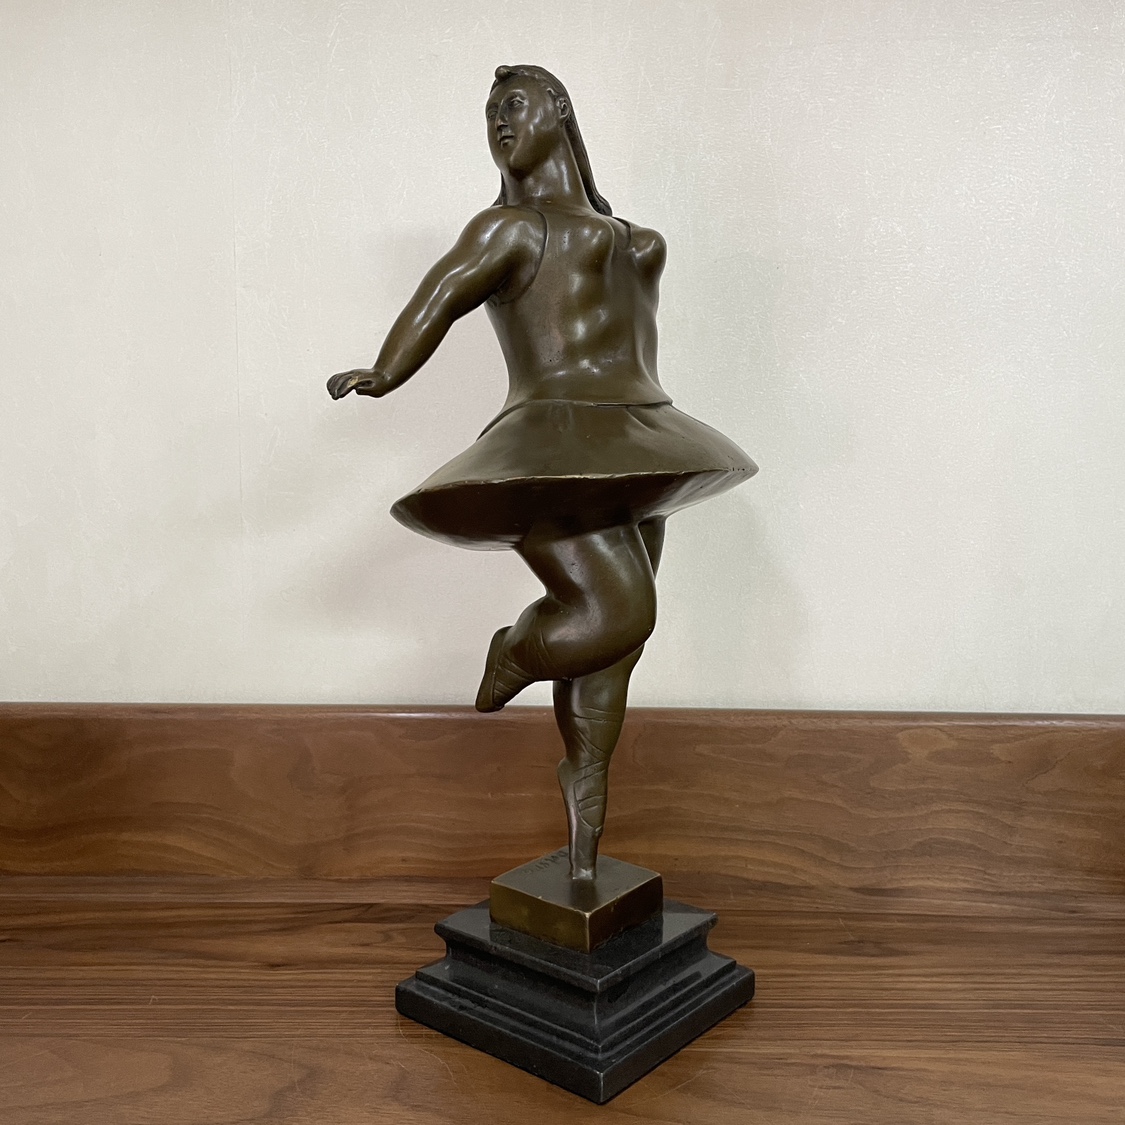 铜雕塑博泰罗跳舞的胖子铜像摆件家居装饰品创意礼品客厅玄关书房